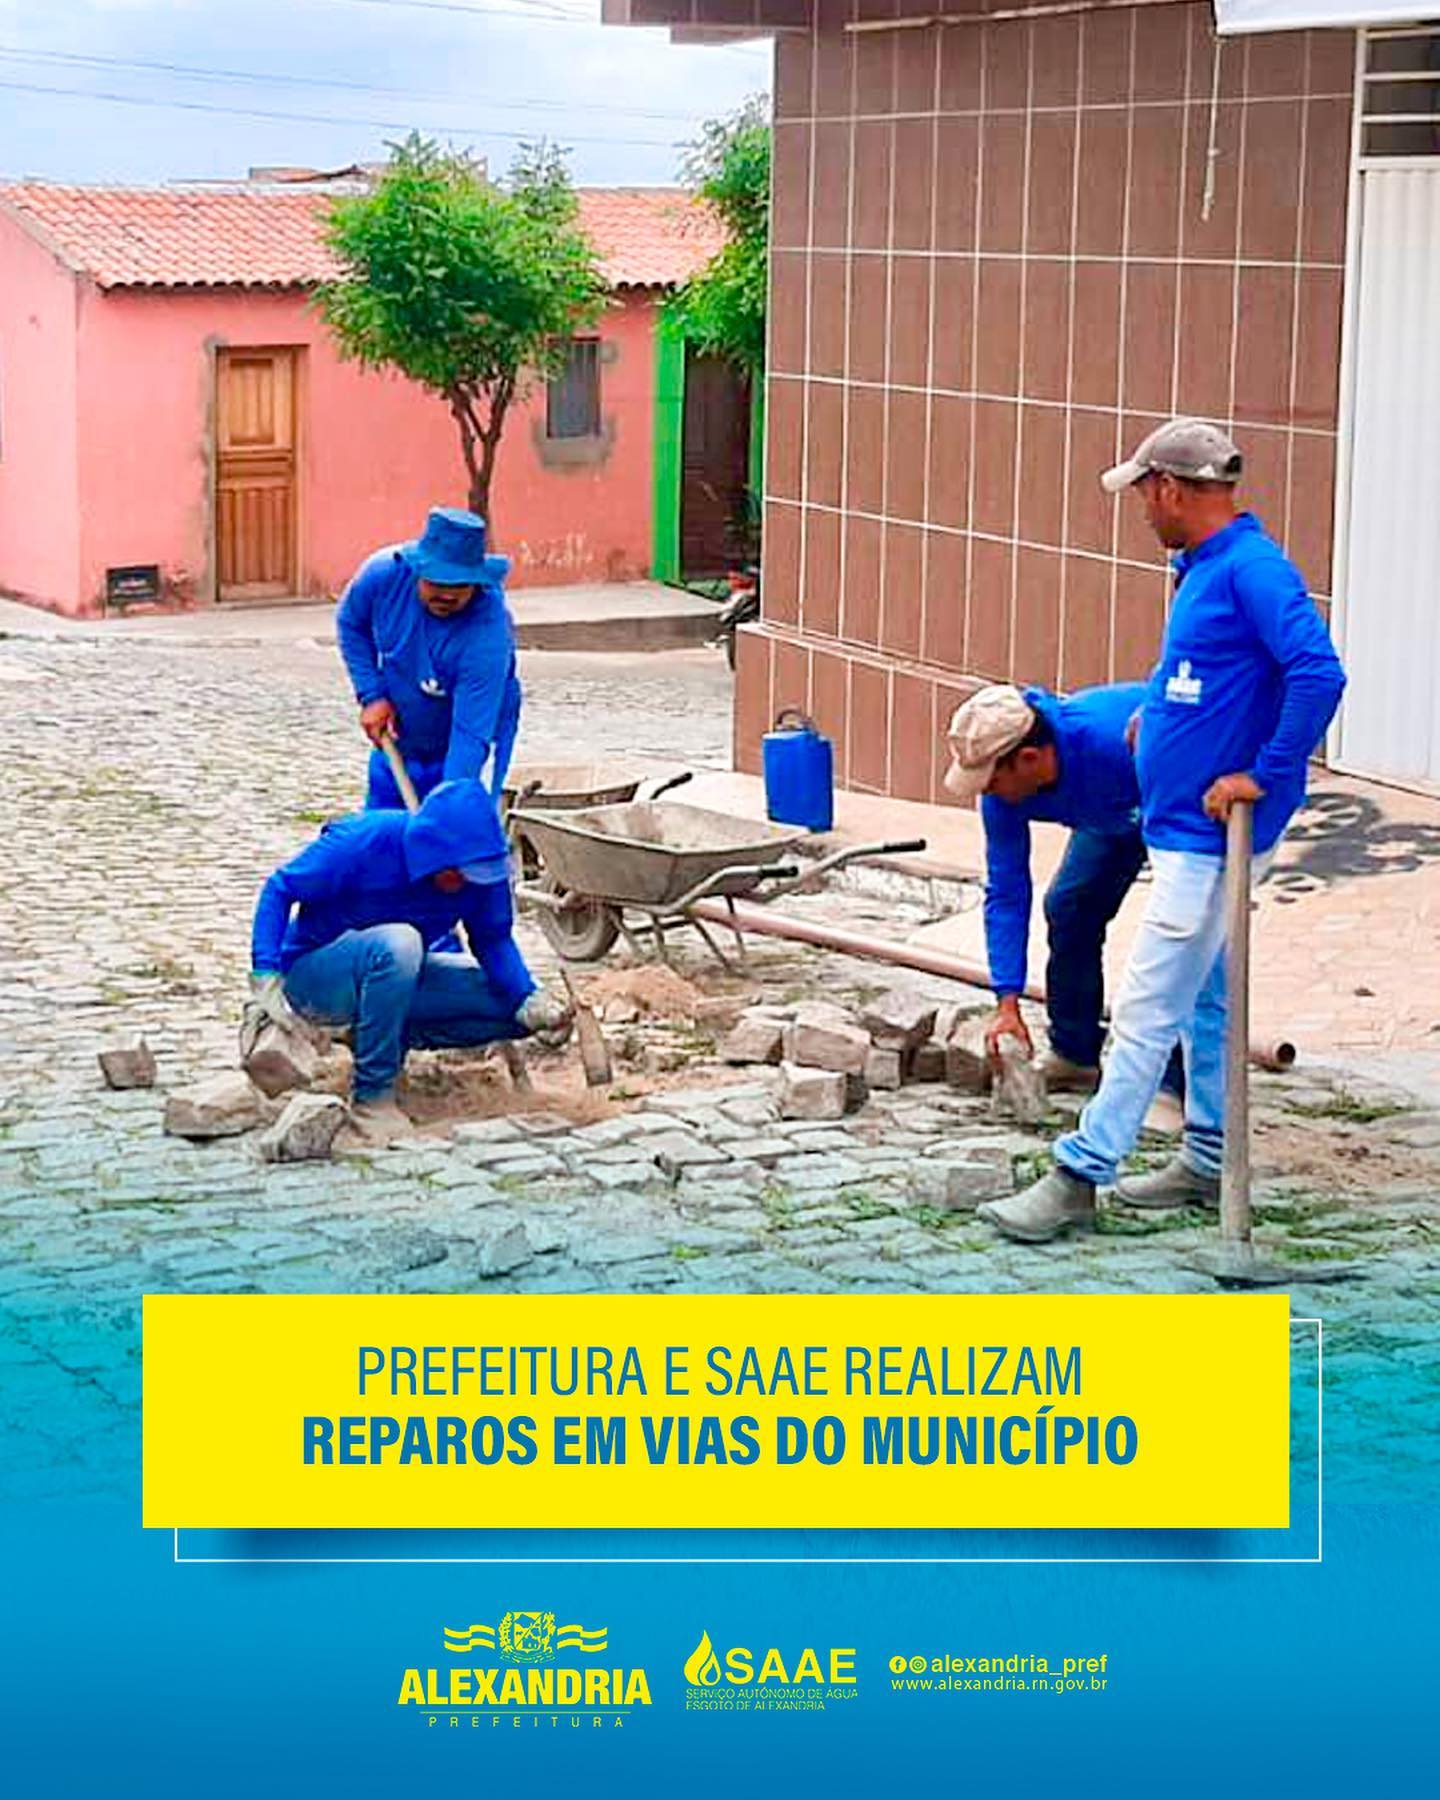 Read more about the article Prefeitura e SAAE realizam reparos em vias publicas do município.